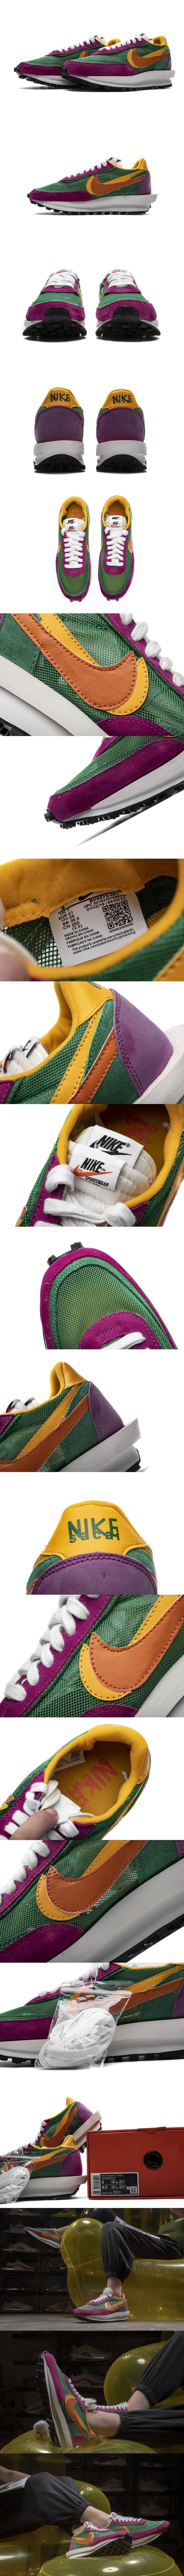 Sacai x Nike LDWaffle Green/Pink/Orange BV0073301 サカイ x LDワッフルグリーン